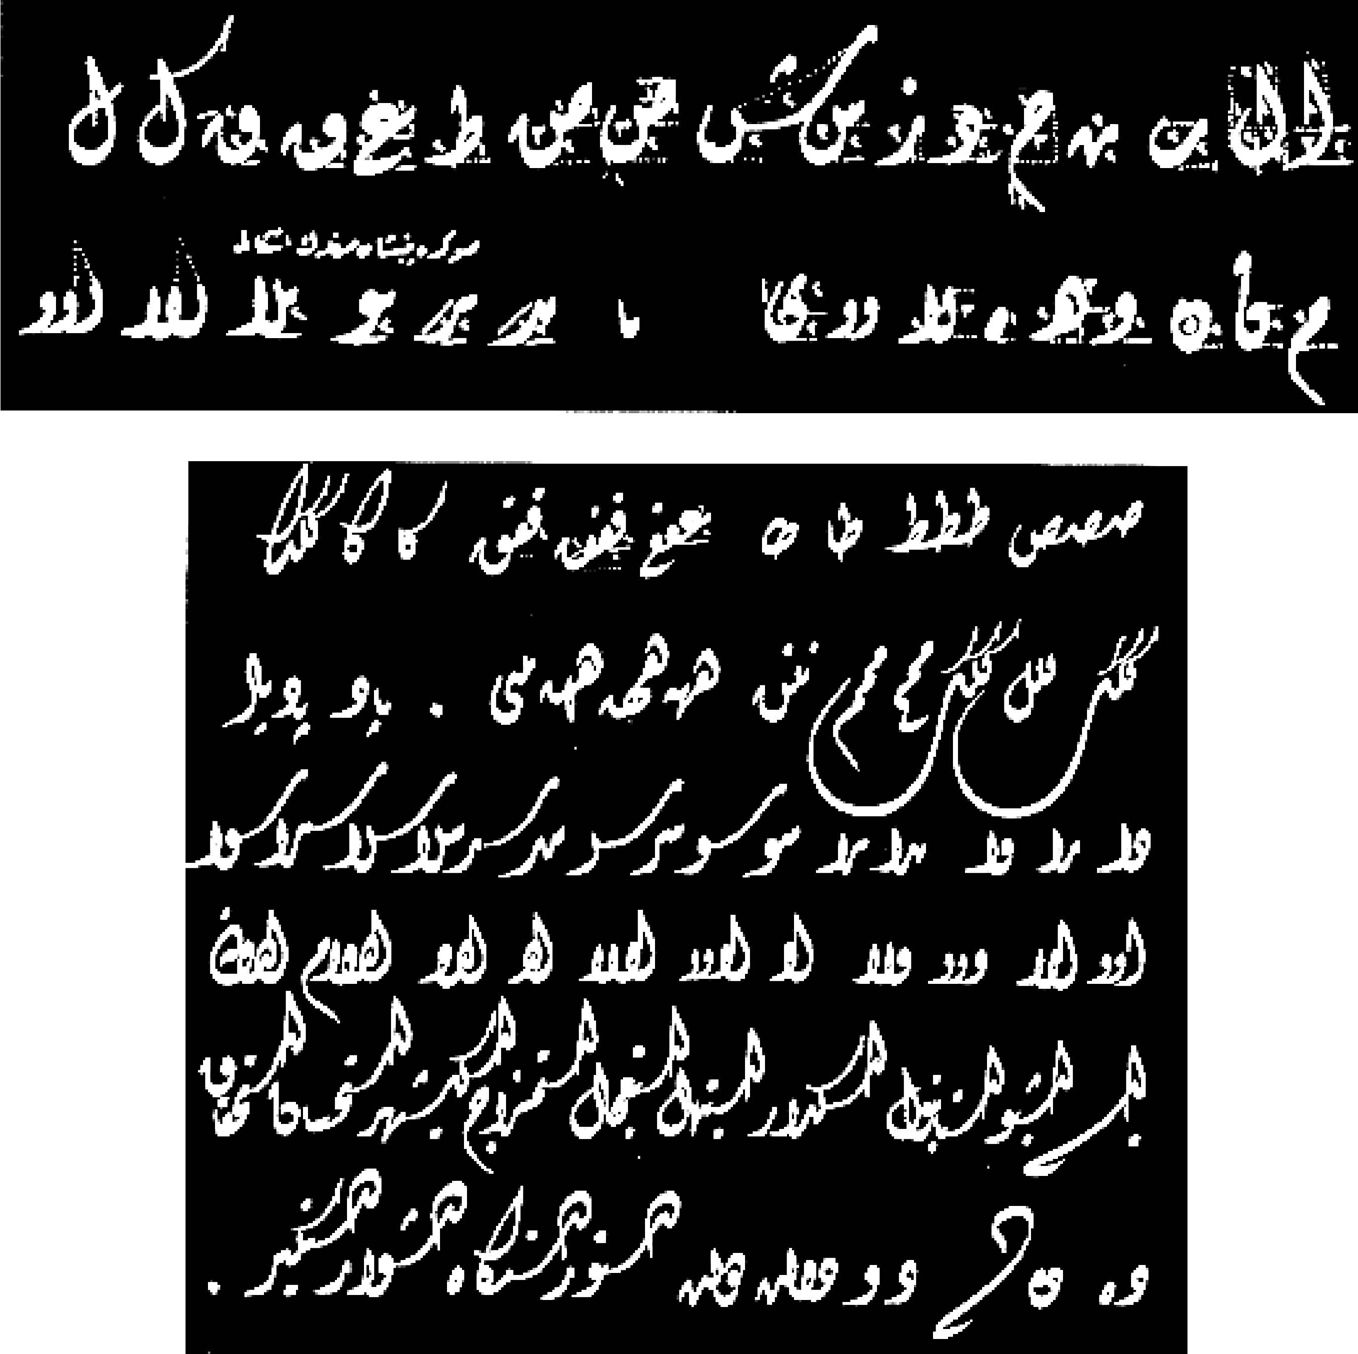 上面两图是穆罕默德·阿扎特在伊斯坦布尔教授书法时书写的迪瓦尼体字母